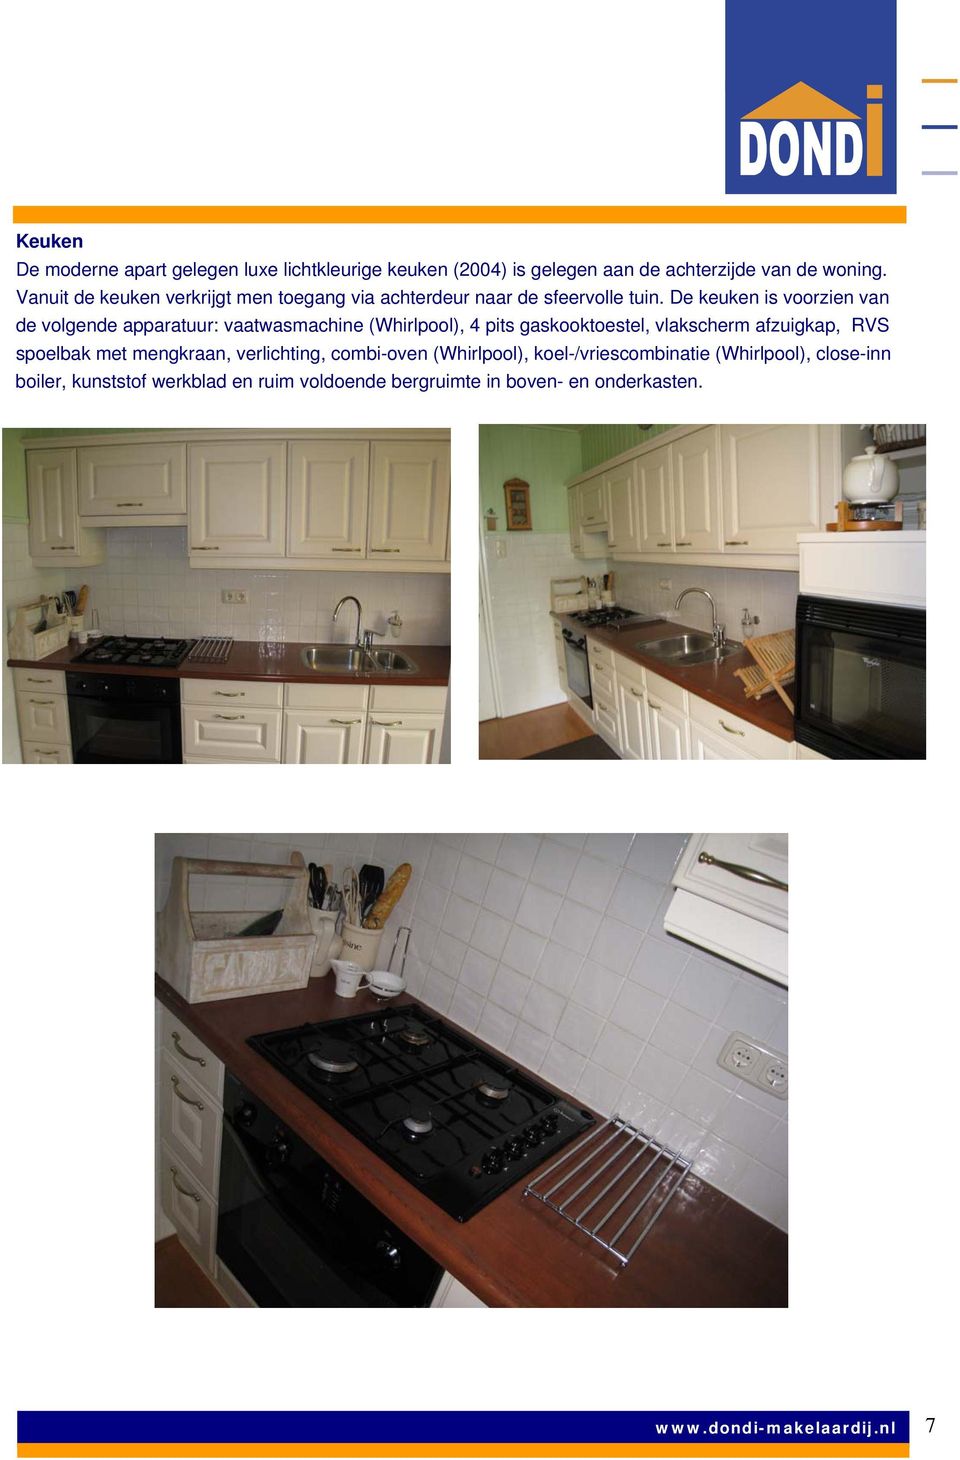 De keuken is voorzien van de volgende apparatuur: vaatwasmachine (Whirlpool), 4 pits gaskooktoestel, vlakscherm afzuigkap, RVS